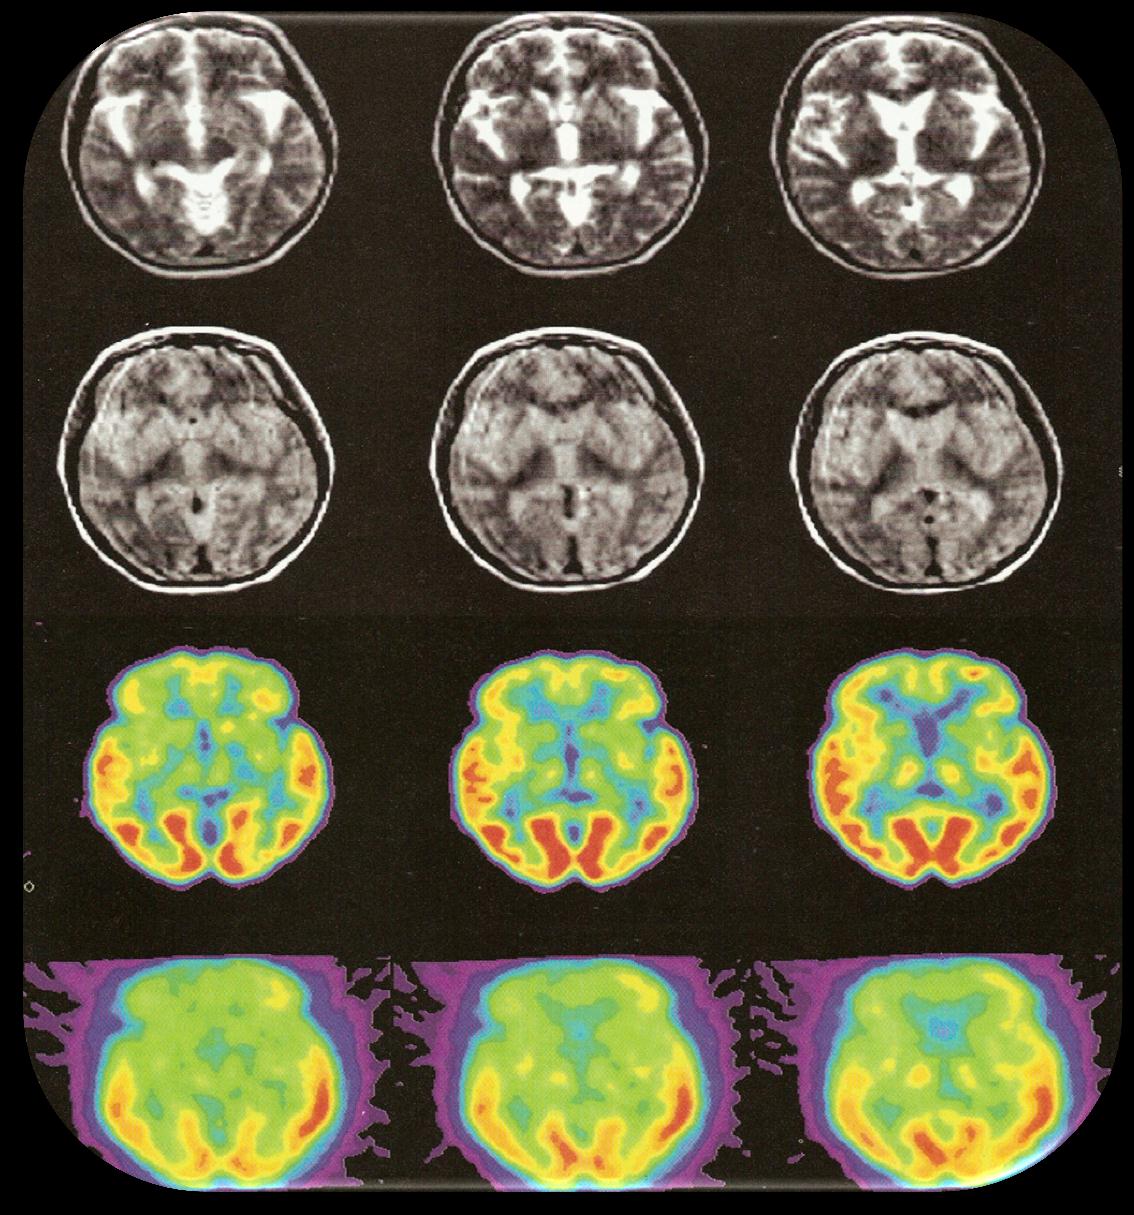 CREUTZFELD- JAKOB MRI: μετωπιαία ατροφία, απεικόνιση βασικών